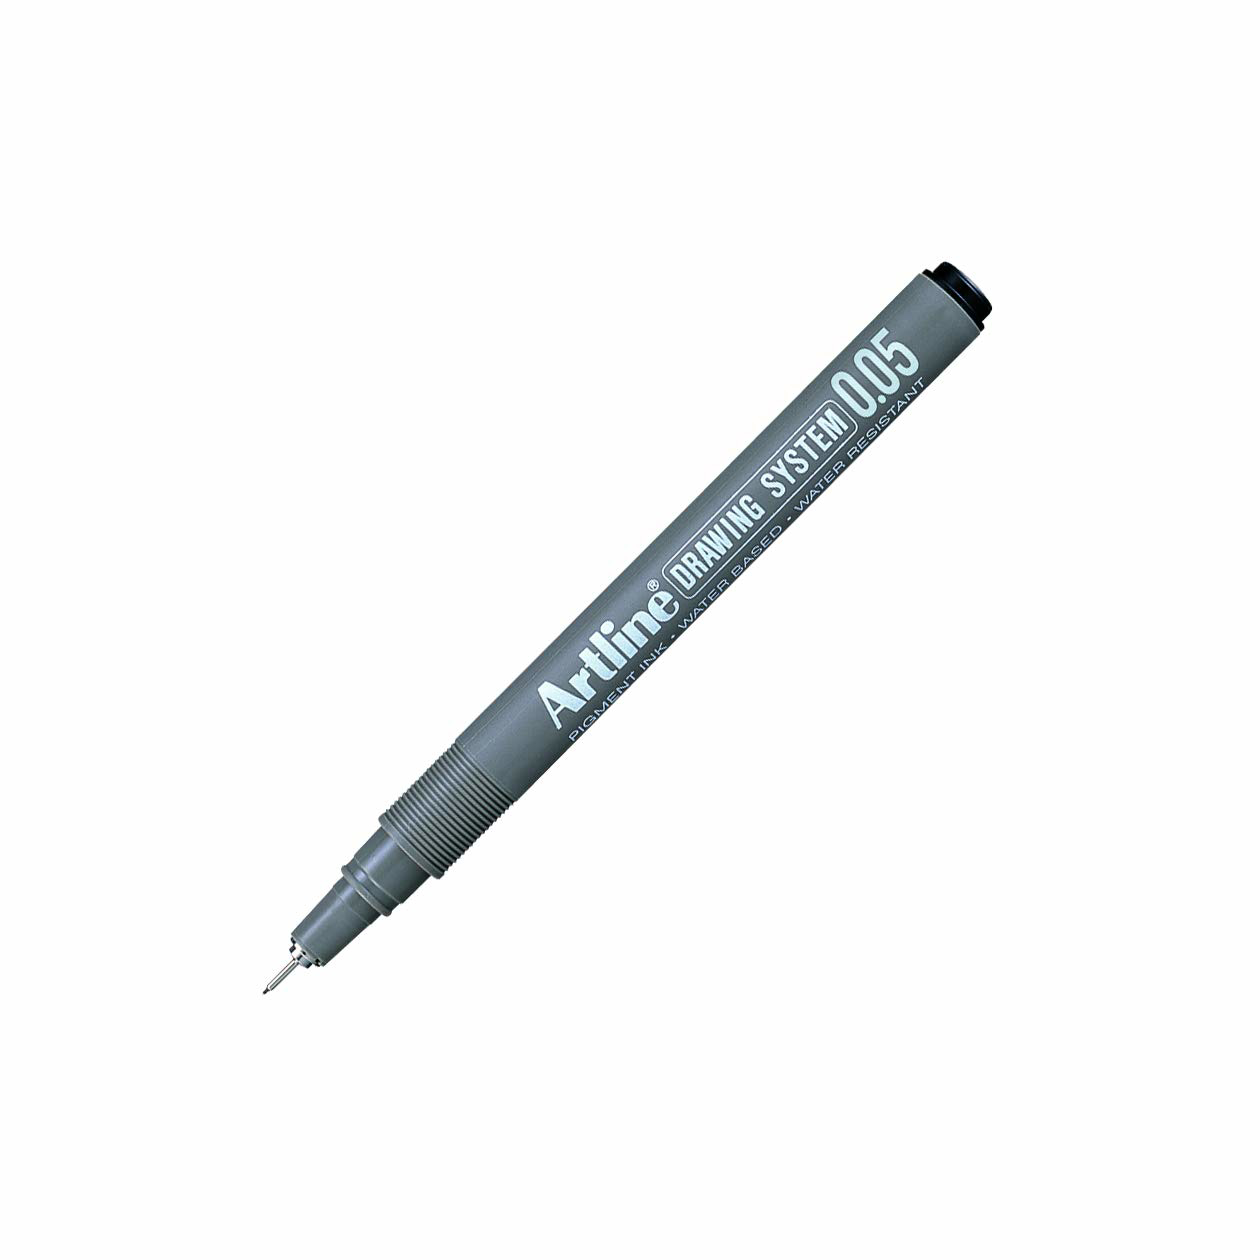 Artline Drawing System Pen Black 005mm